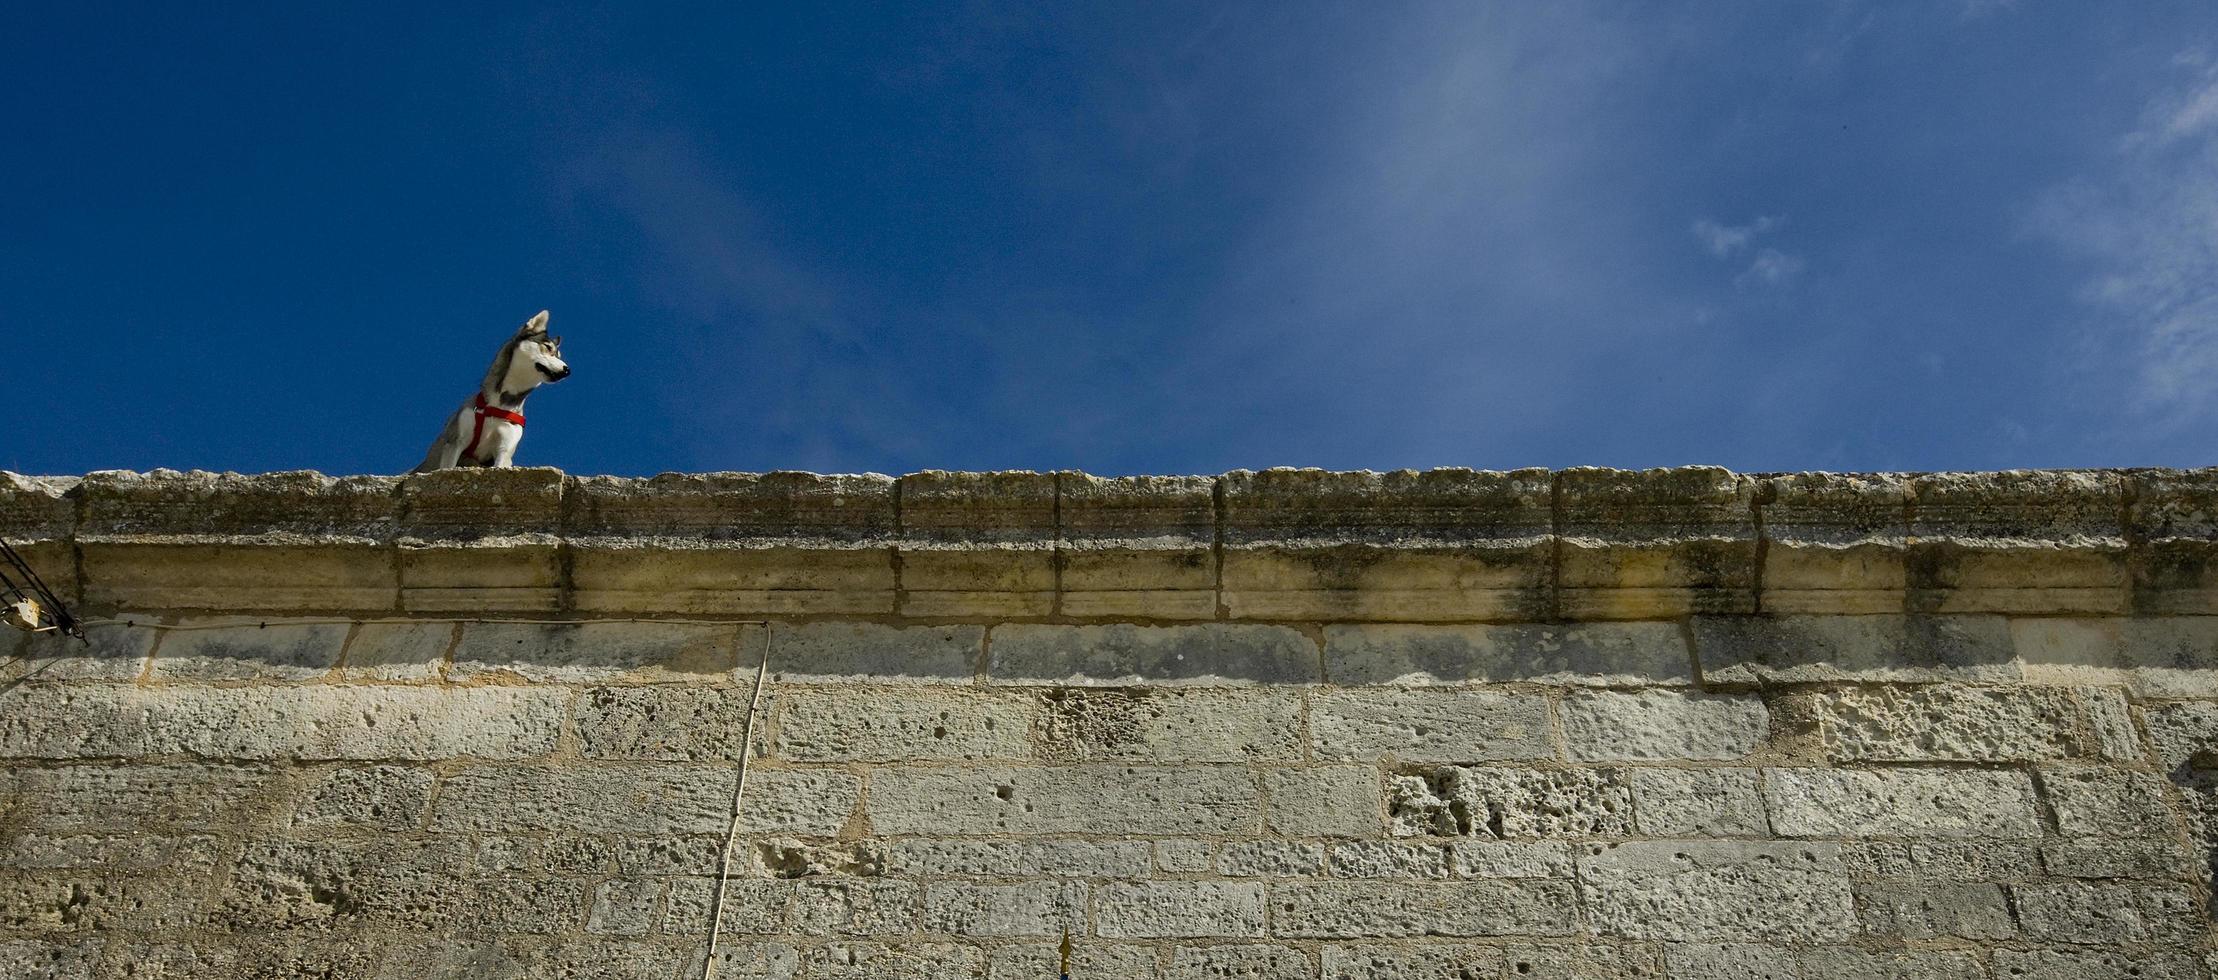 Husky-Hund kletterte auf die Steinmauer der alten Schmiede Royal Royal Wrought, in der maritimen Provinz Charente, Frankreich foto